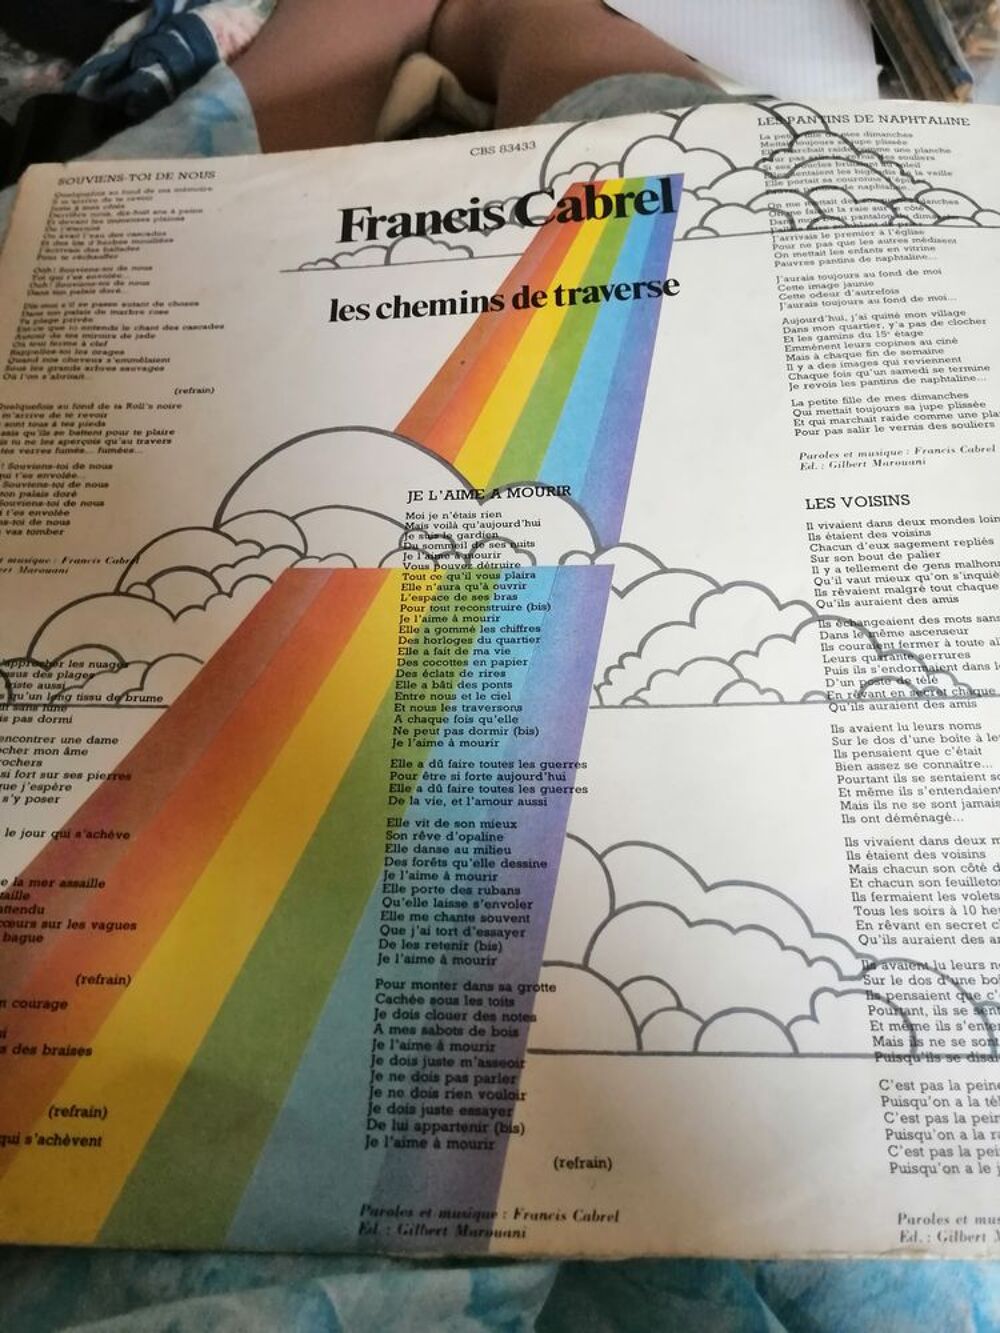 Vinyle 33 tours de Francis Cabrel &quot;les chemins de traverse&quot; CD et vinyles